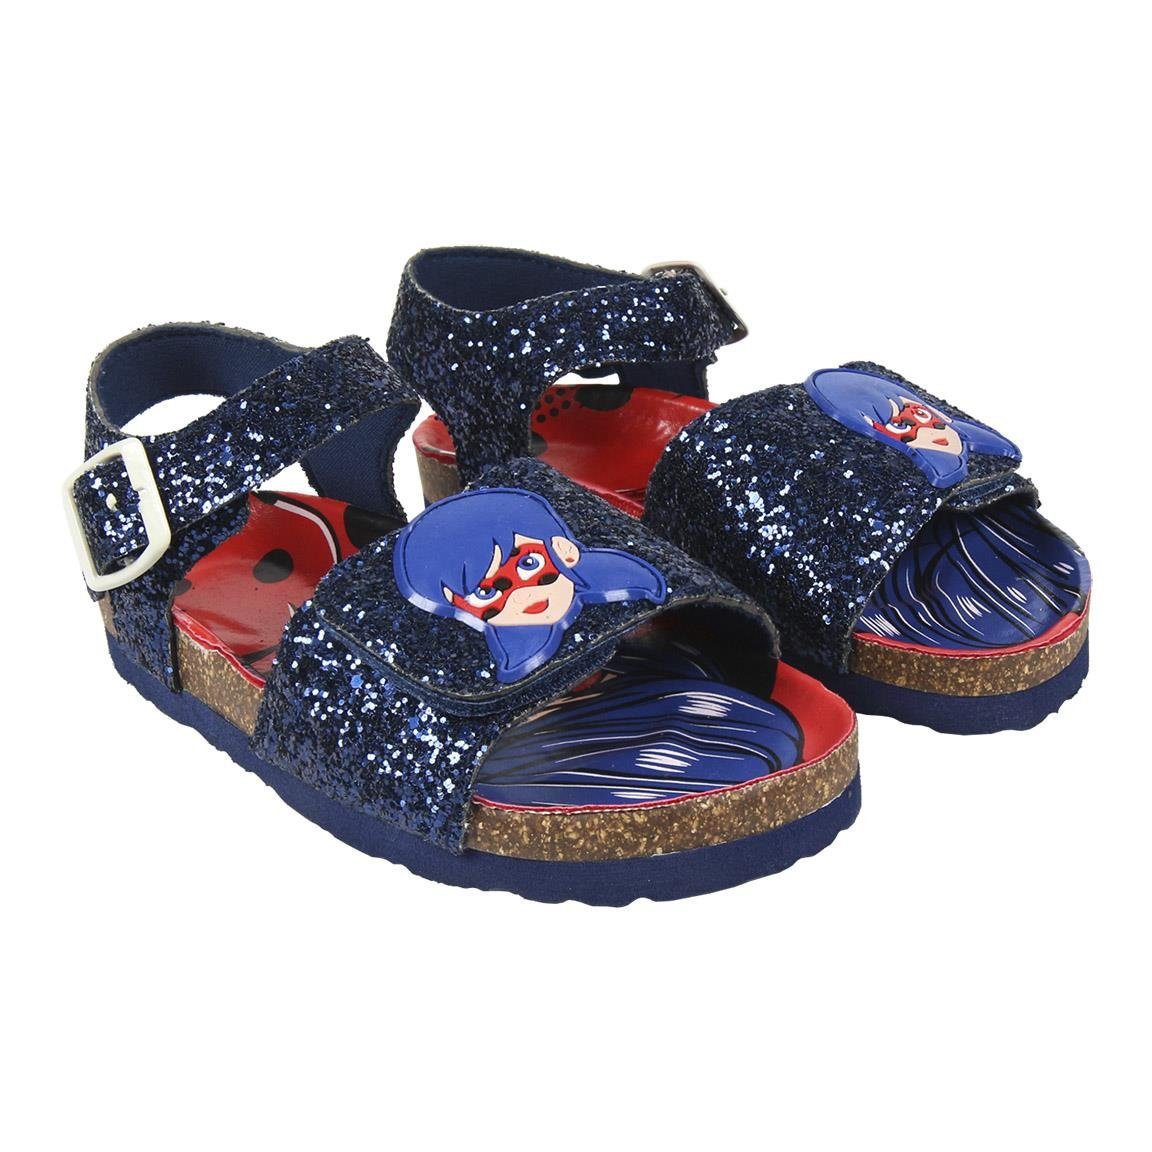 Miraculous - Ladybug »Kinder Mädchen Sandaletten« Sandale Gr. 25 bis 32  online kaufen | OTTO